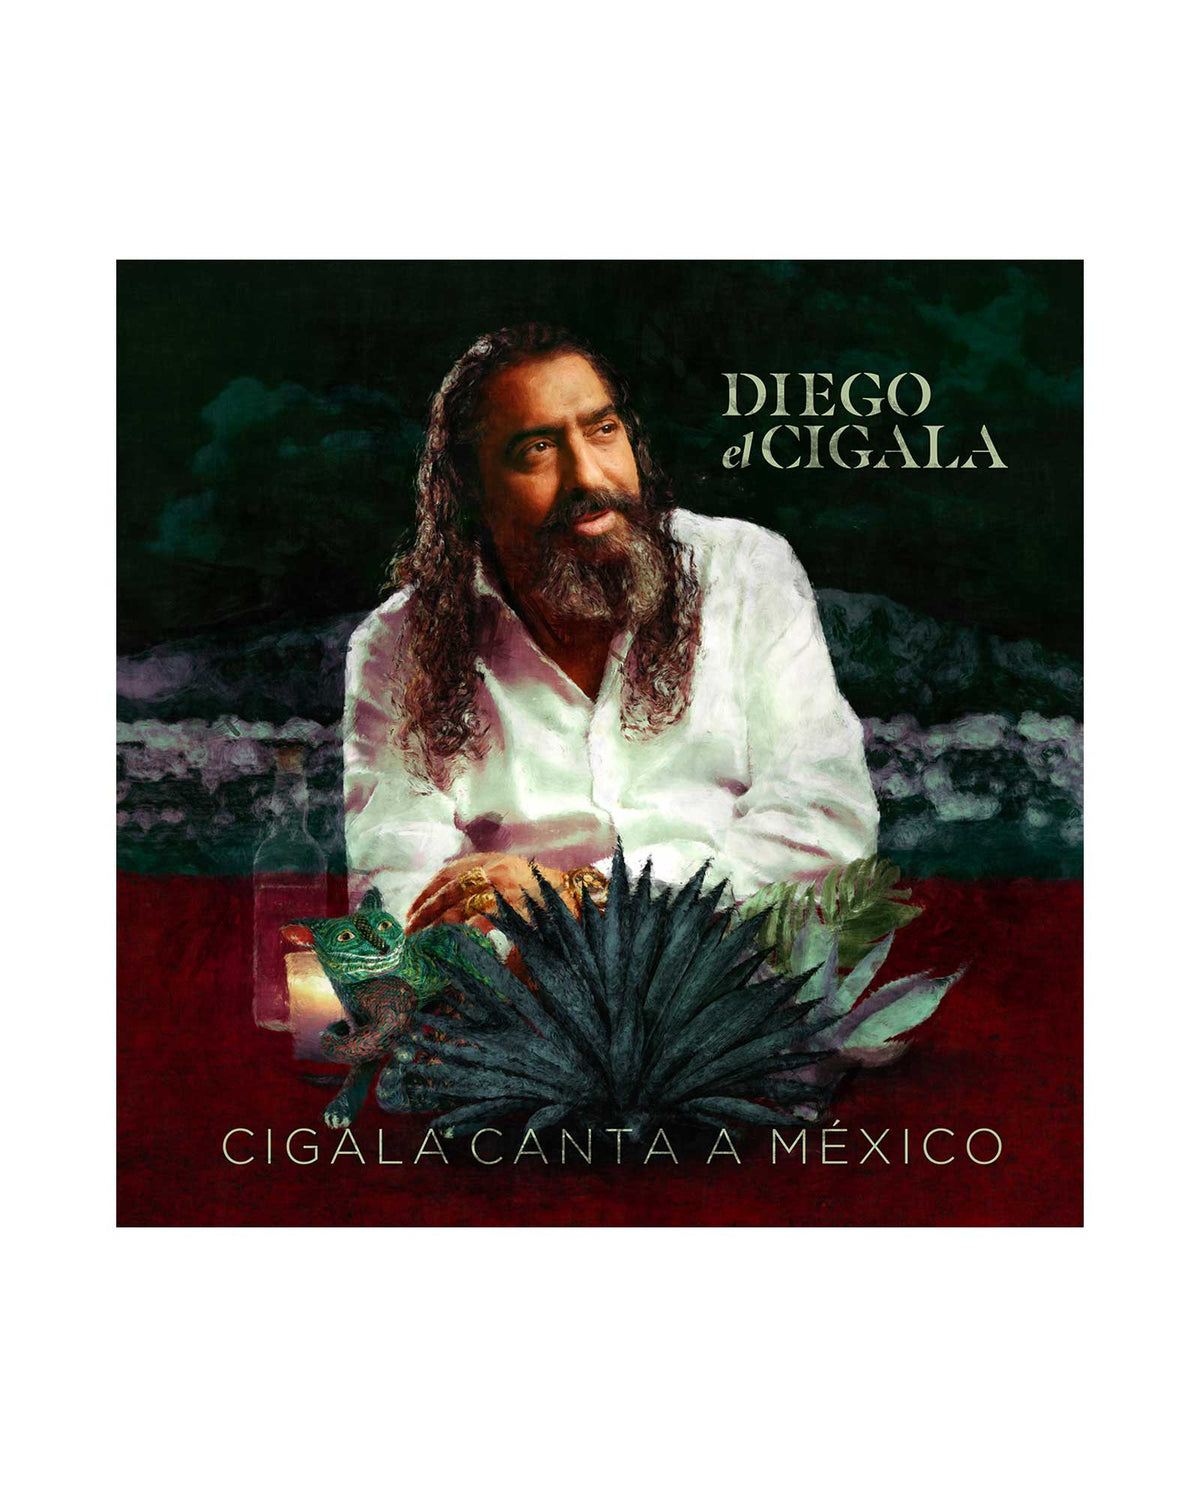 El Cigala - CD "Cigala canta a México" - D2fy · Rocktud - El Cigala